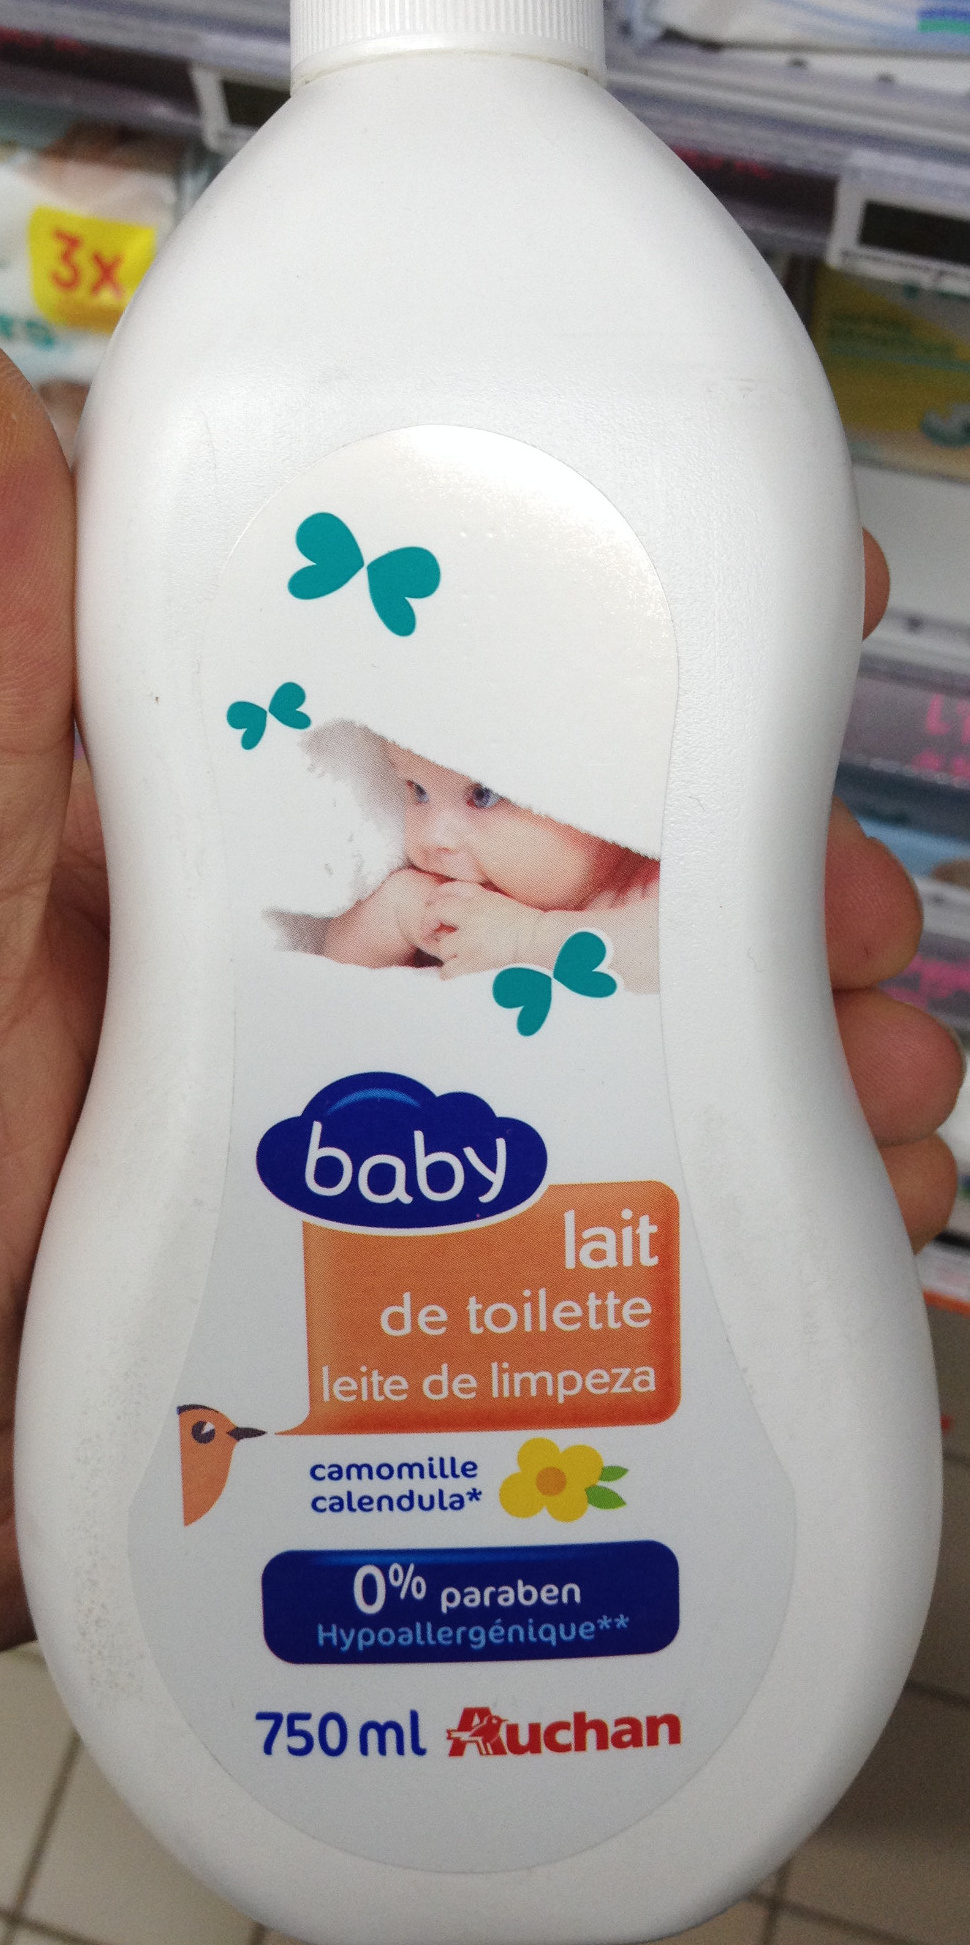 Lait de toilette baby camomille - Produktas - fr